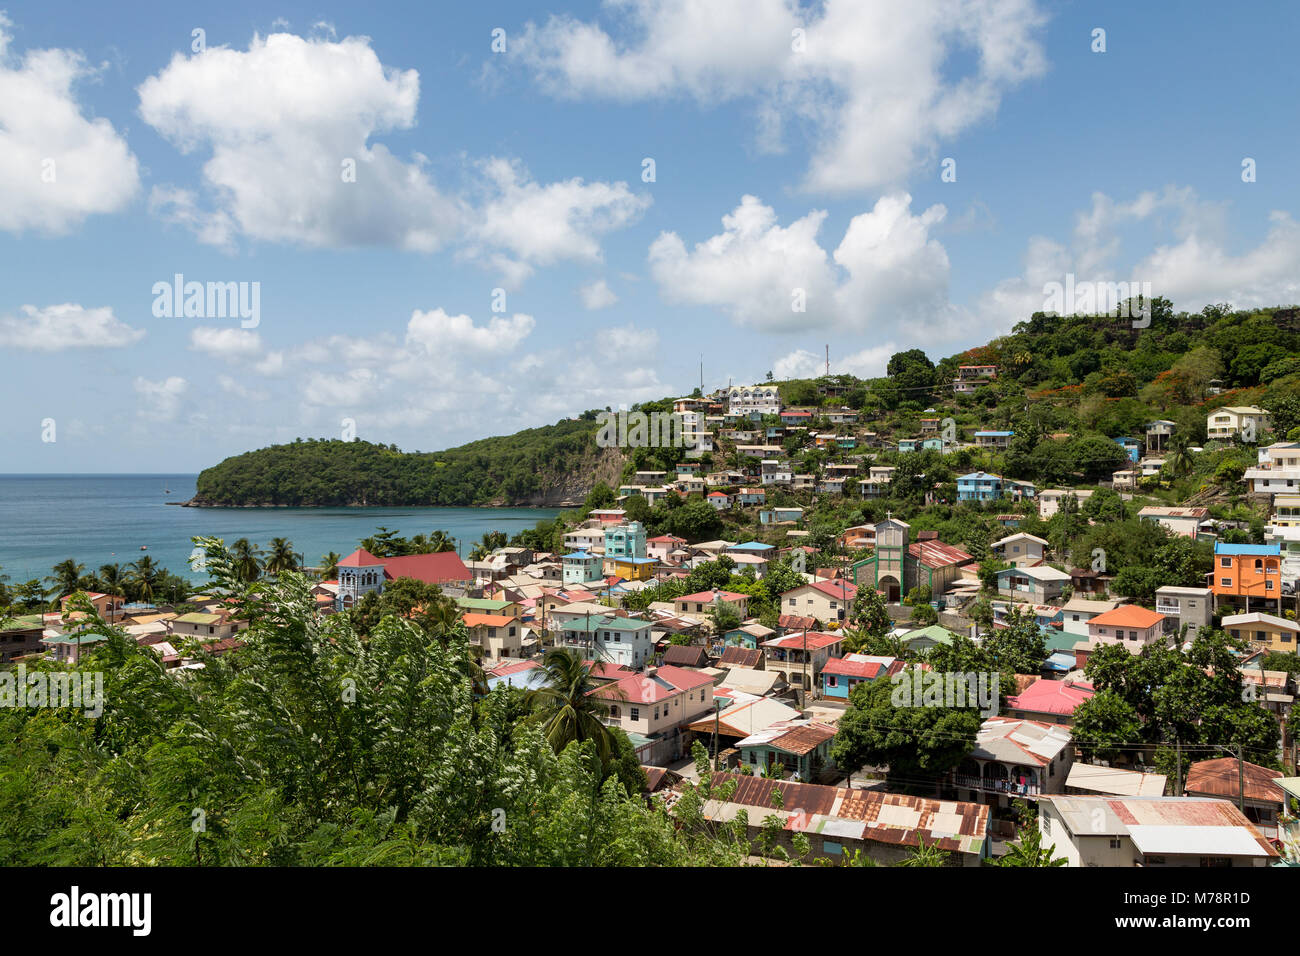 Die kleine Stadt der Kanarischen Inseln, mit Kanaren Bucht, St. Lucia, Windward Islands, West Indies Karibik, Mittelamerika Stockfoto